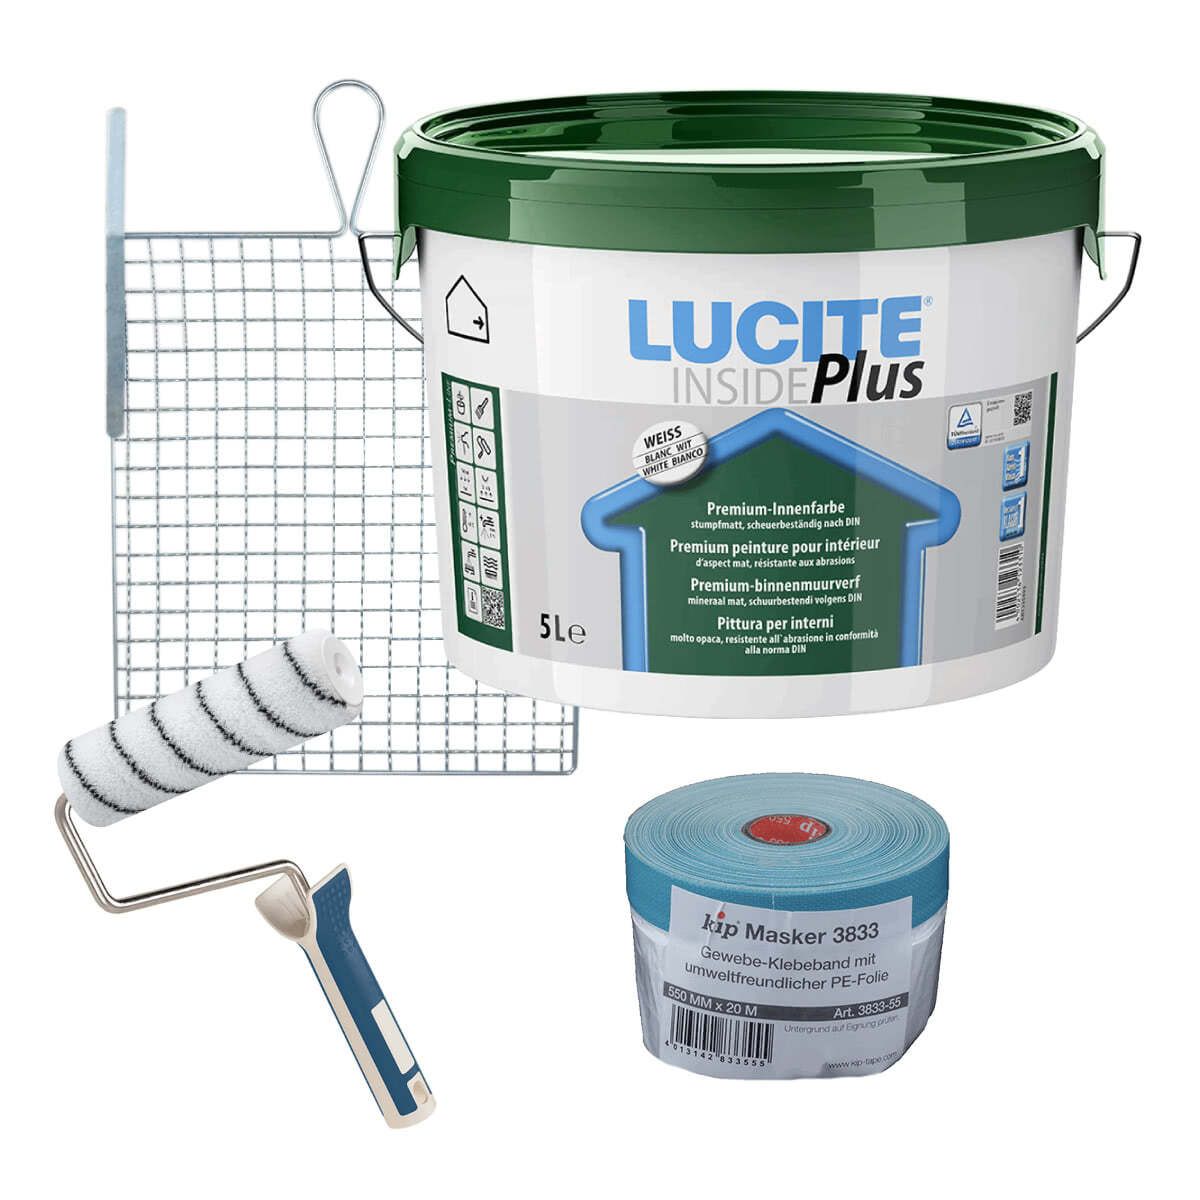 LUCITE® Inside Plus mit Werkzeug von FPT Group GmbH